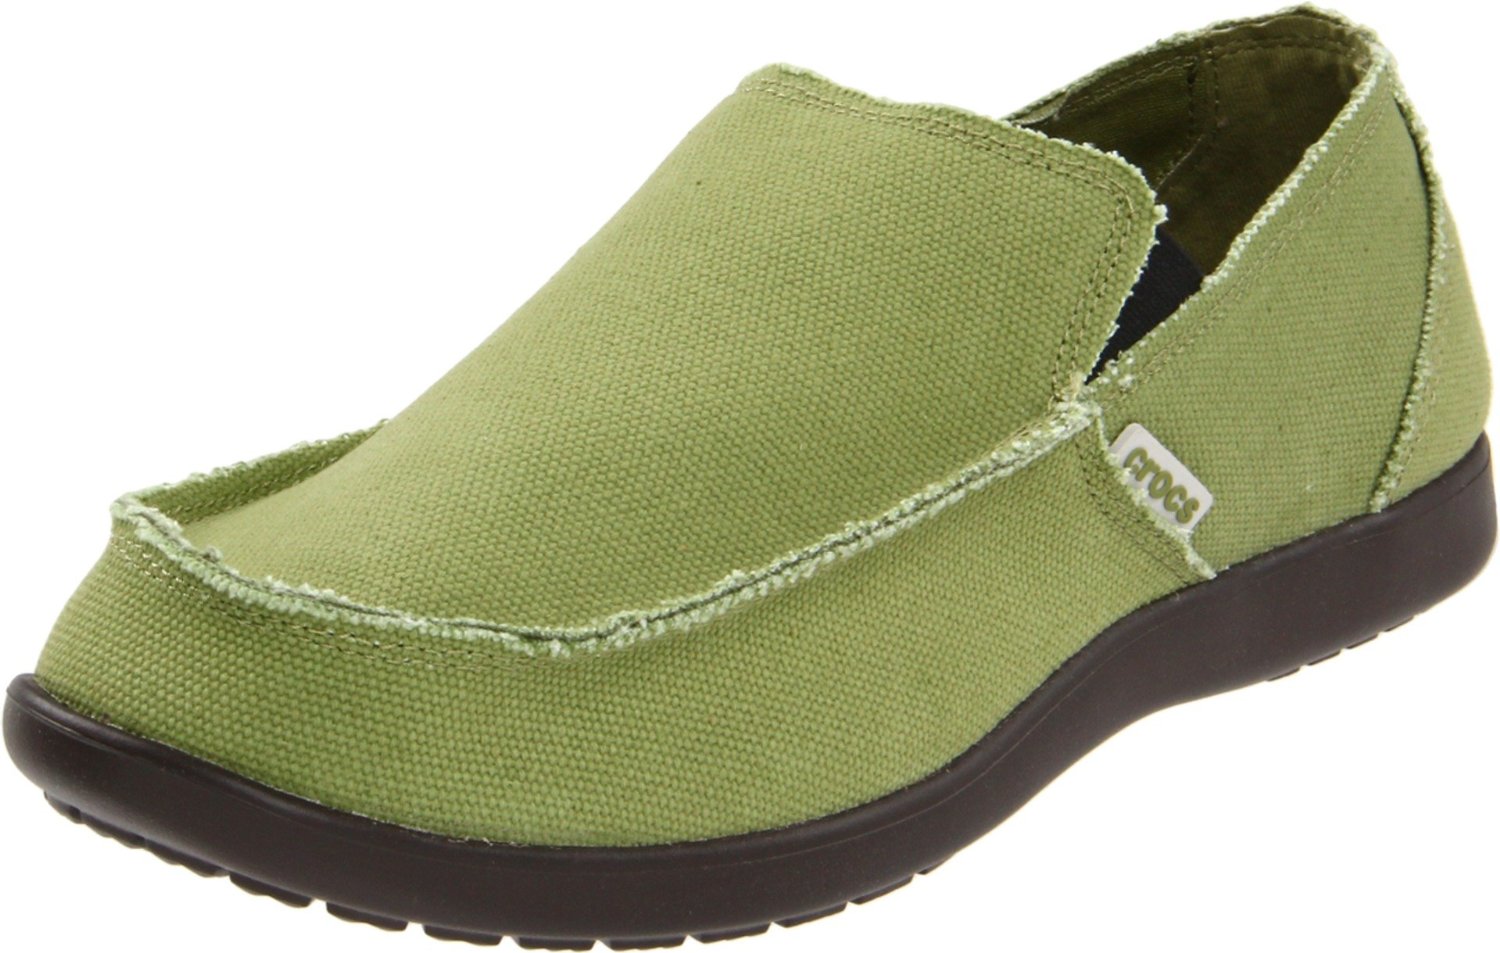 Crocs Shoes: Crocs Men's Santa Cruz Slip-On